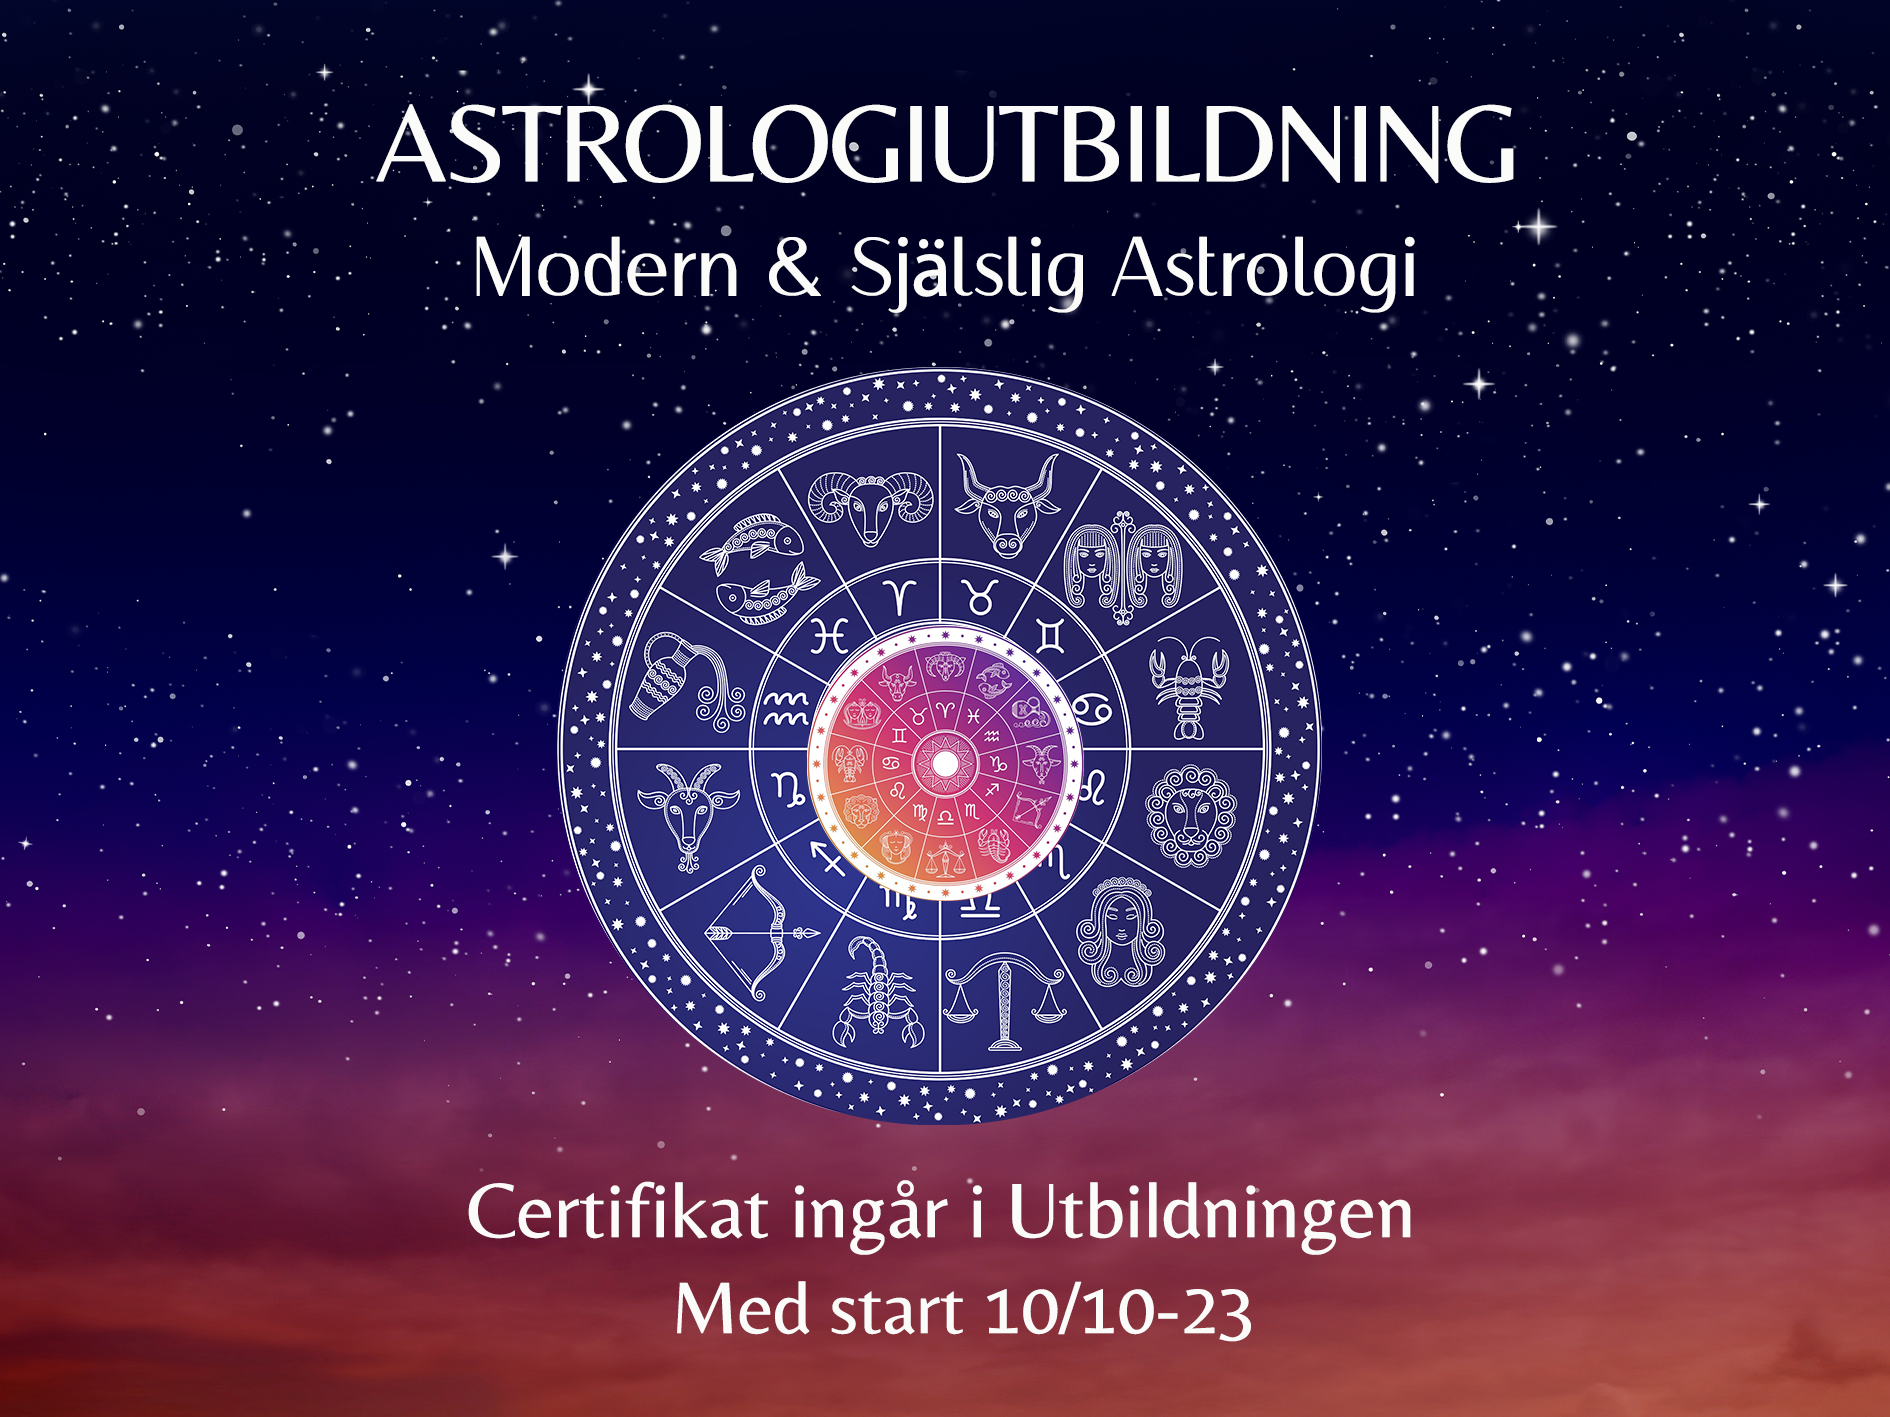 Astrologiutbildning – Lär dig tolka & Bemästra Födelsekartan